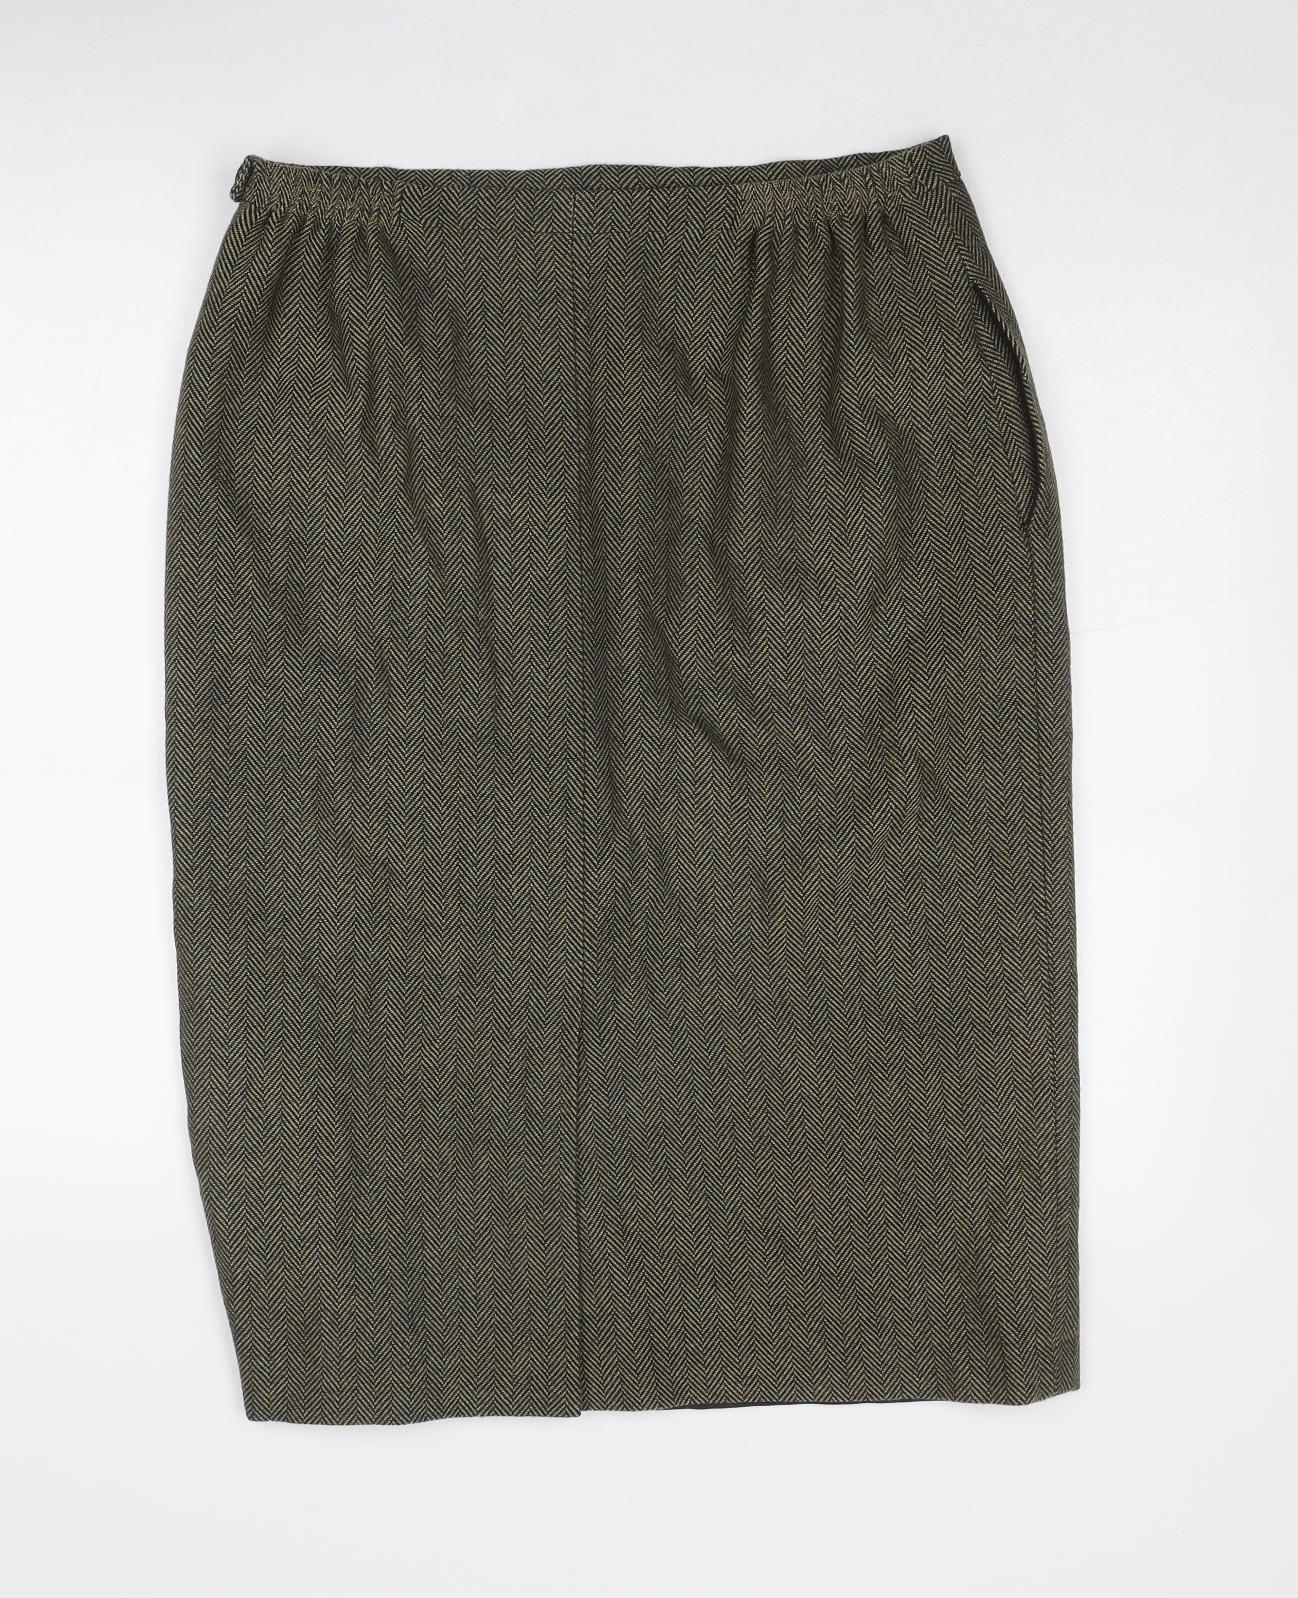 Avoca Womens Brown Herringbone Acrylic Straight & Pencil Skirt Size 16 Zip